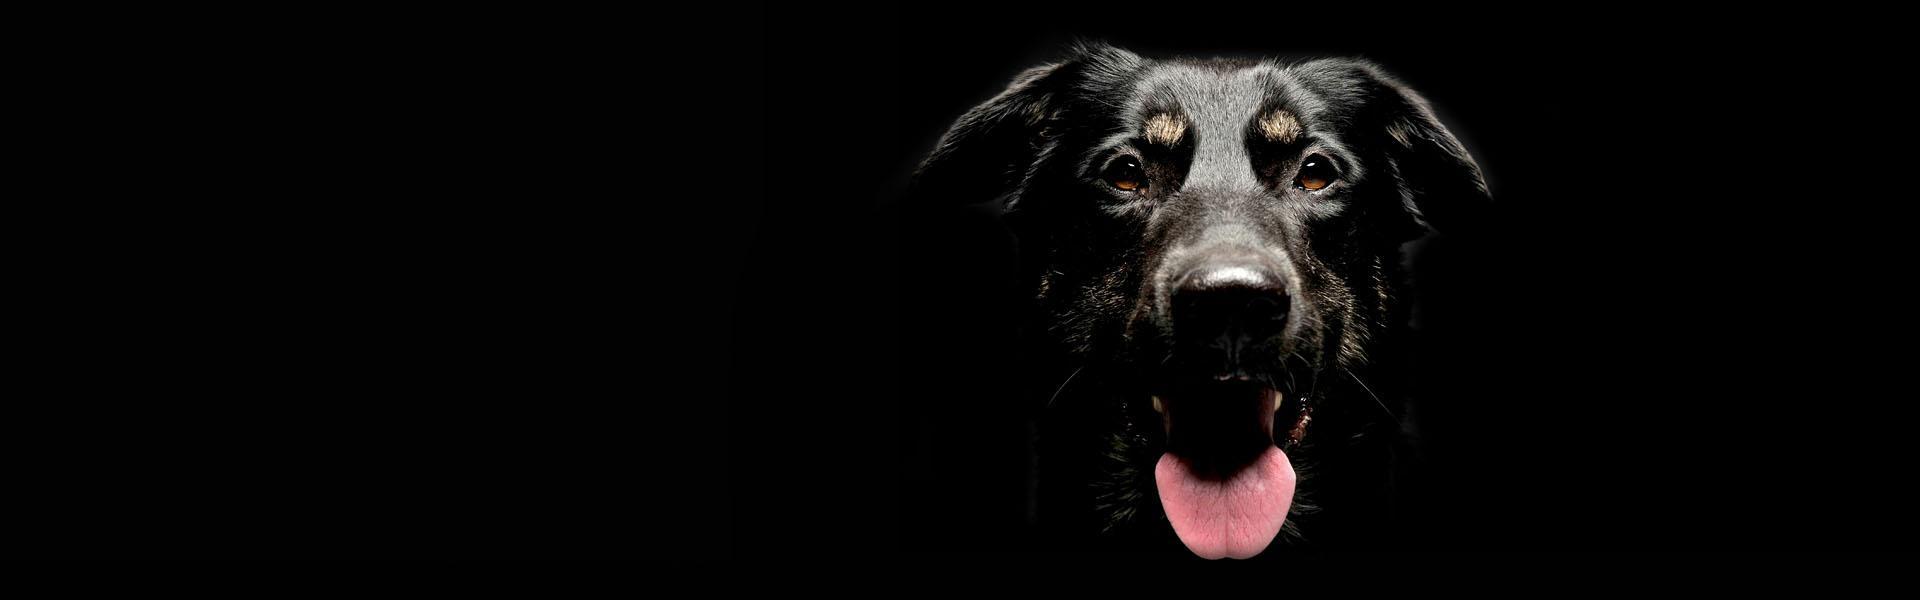 Slajd - 1 - czarny pies z językiem na wierzchu